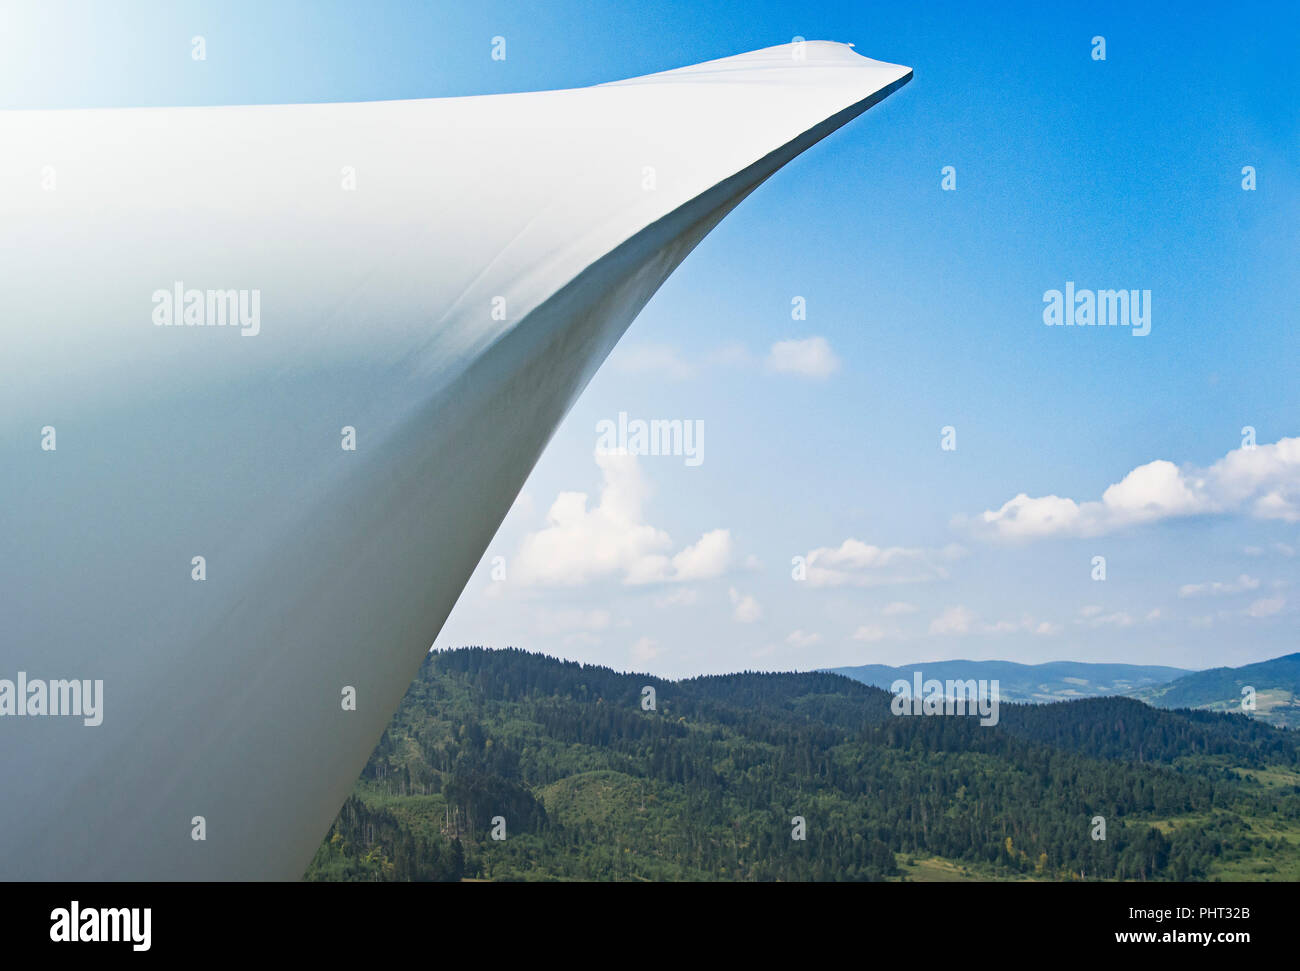 Aerogenerador desde vista aérea - desarrollo sostenible, medio ambiente, energía renovable concepto. Foto de stock